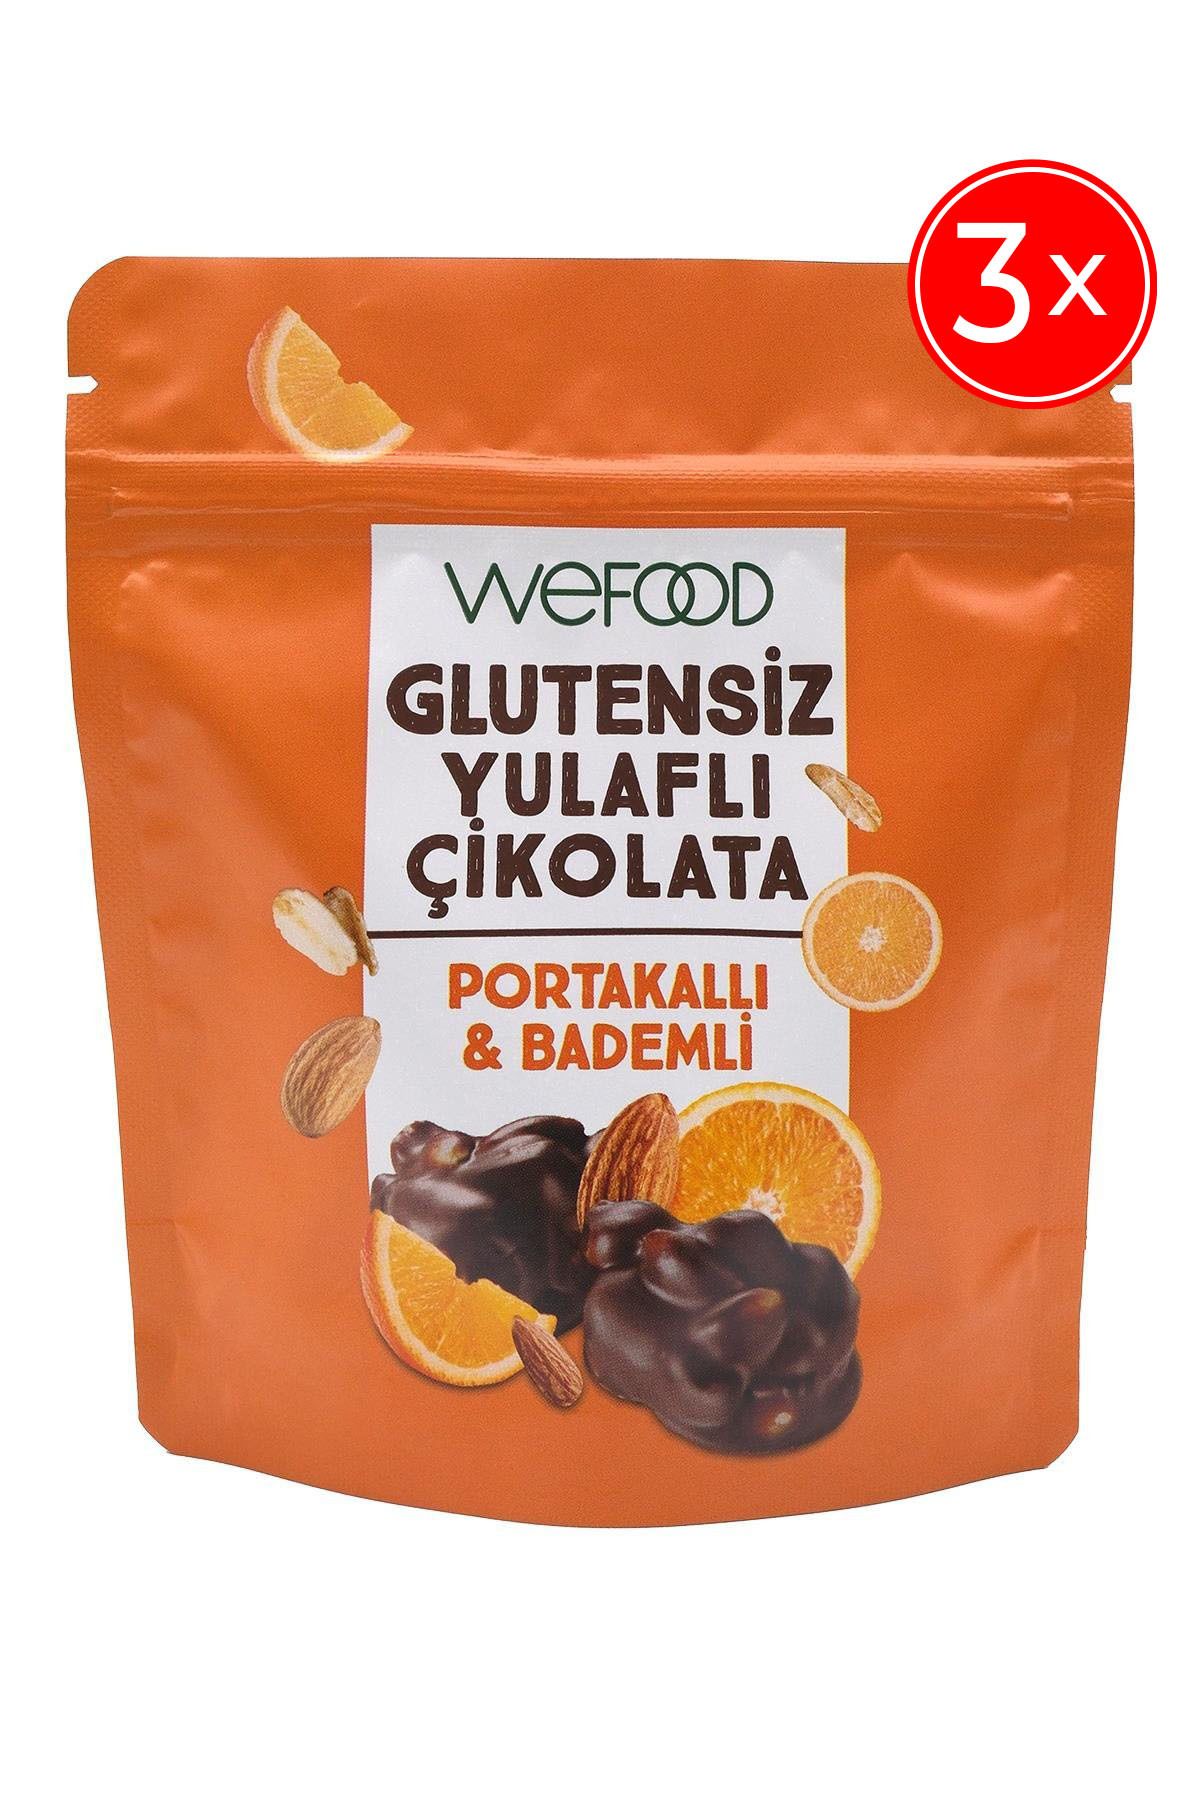 Wefood Glutensiz Yulaflı Çikolata Portakallı & Bademli 40 gr 3'lü